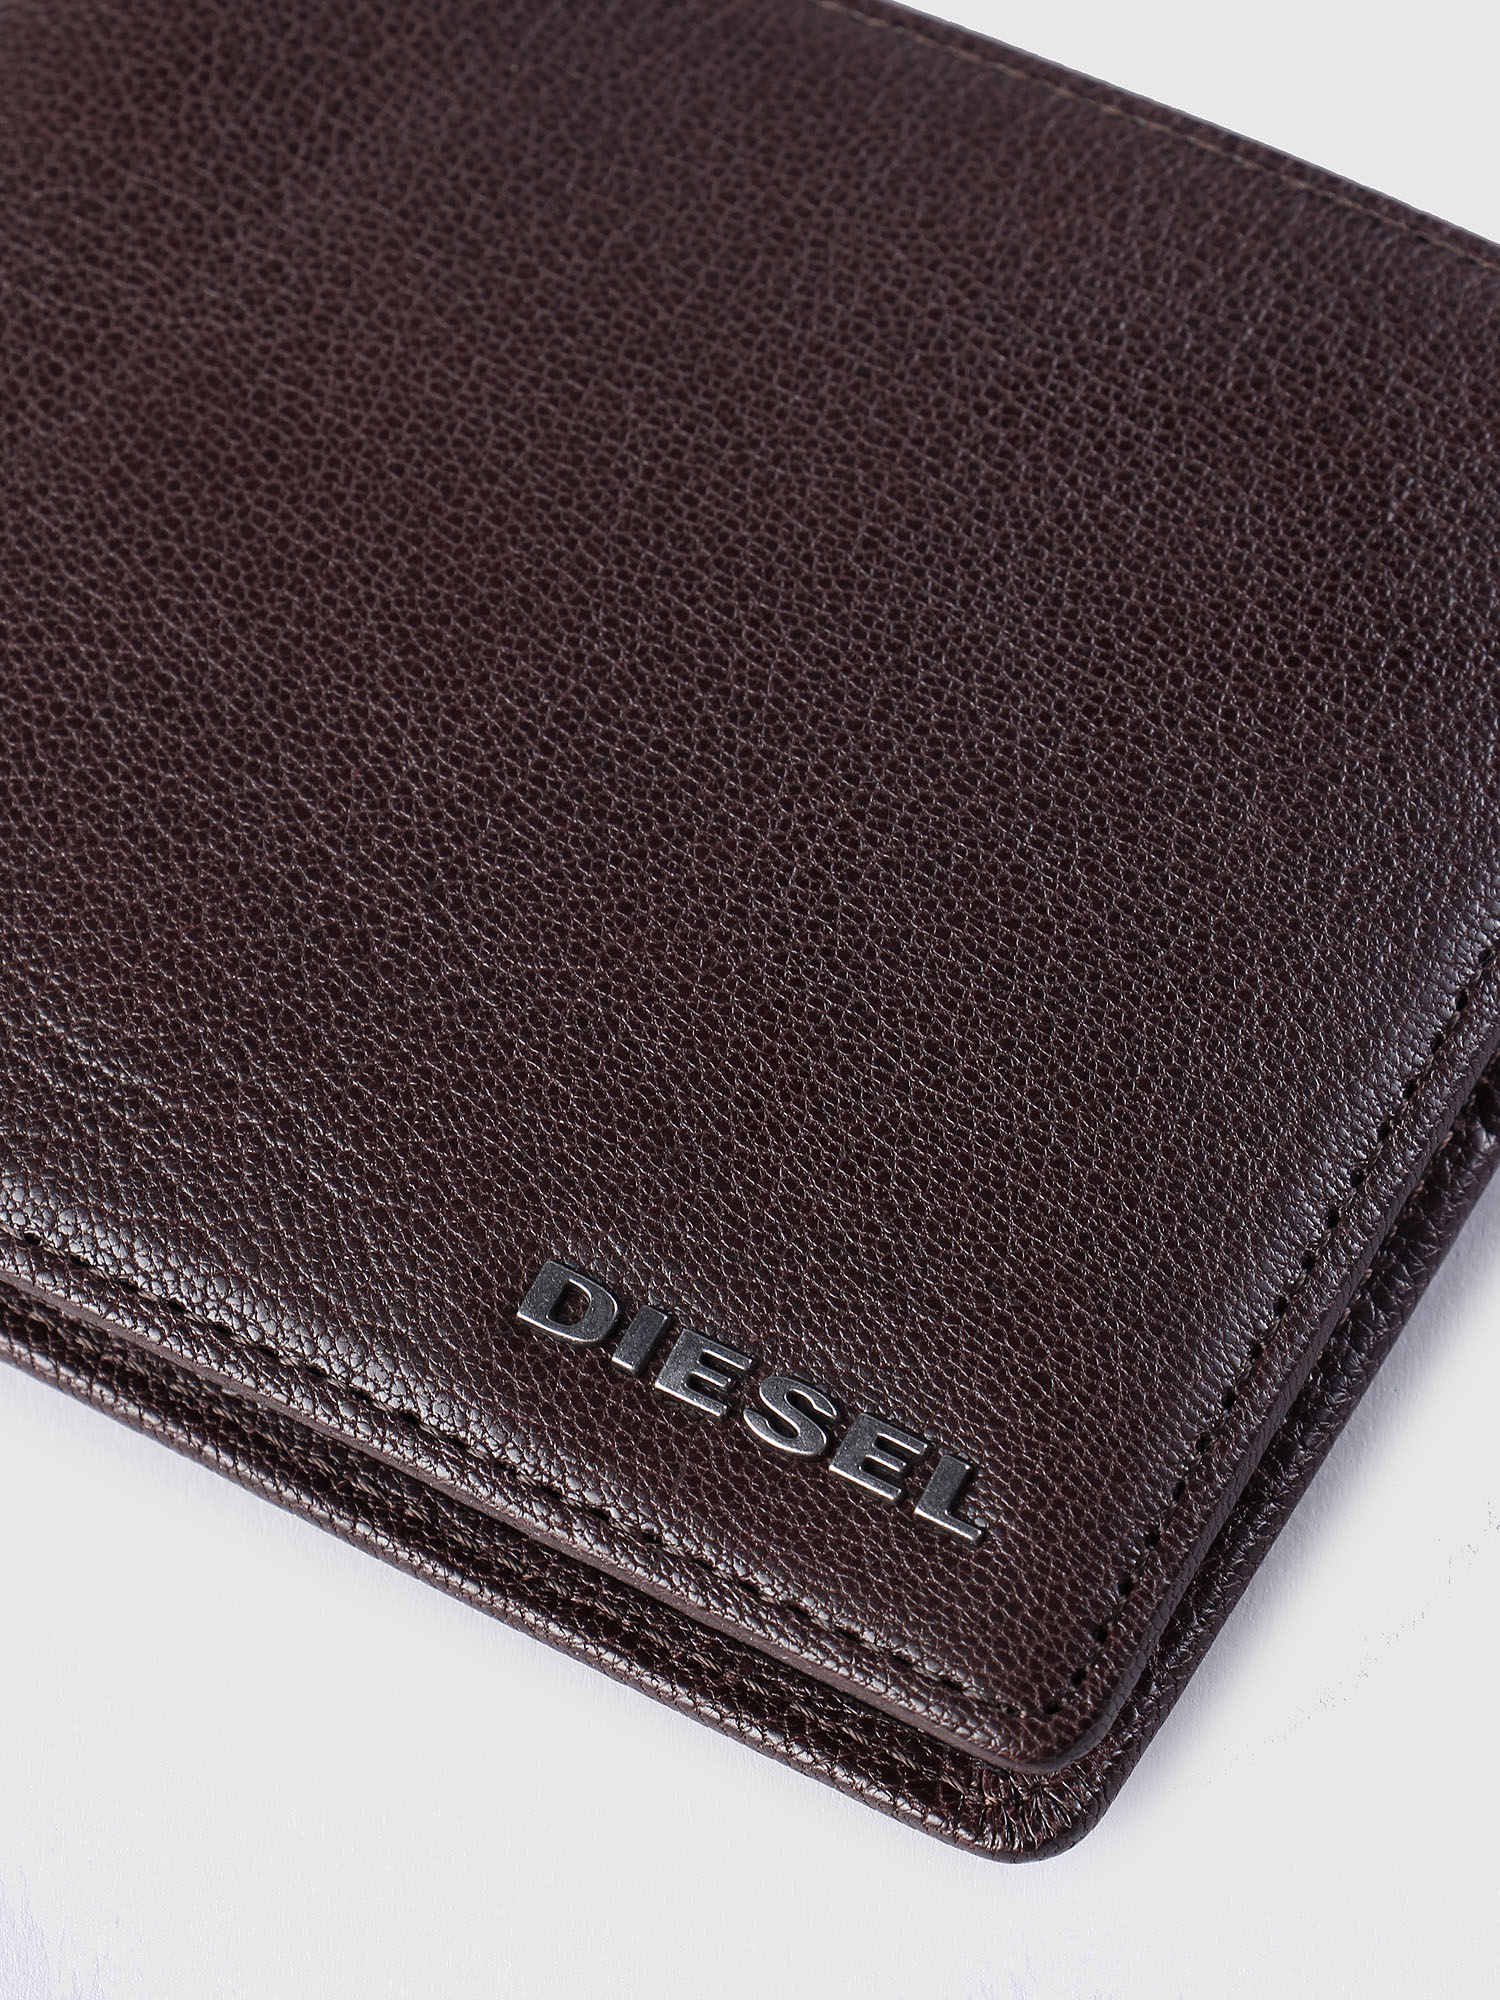 Diesel - NEELA S, Brown - Image 3